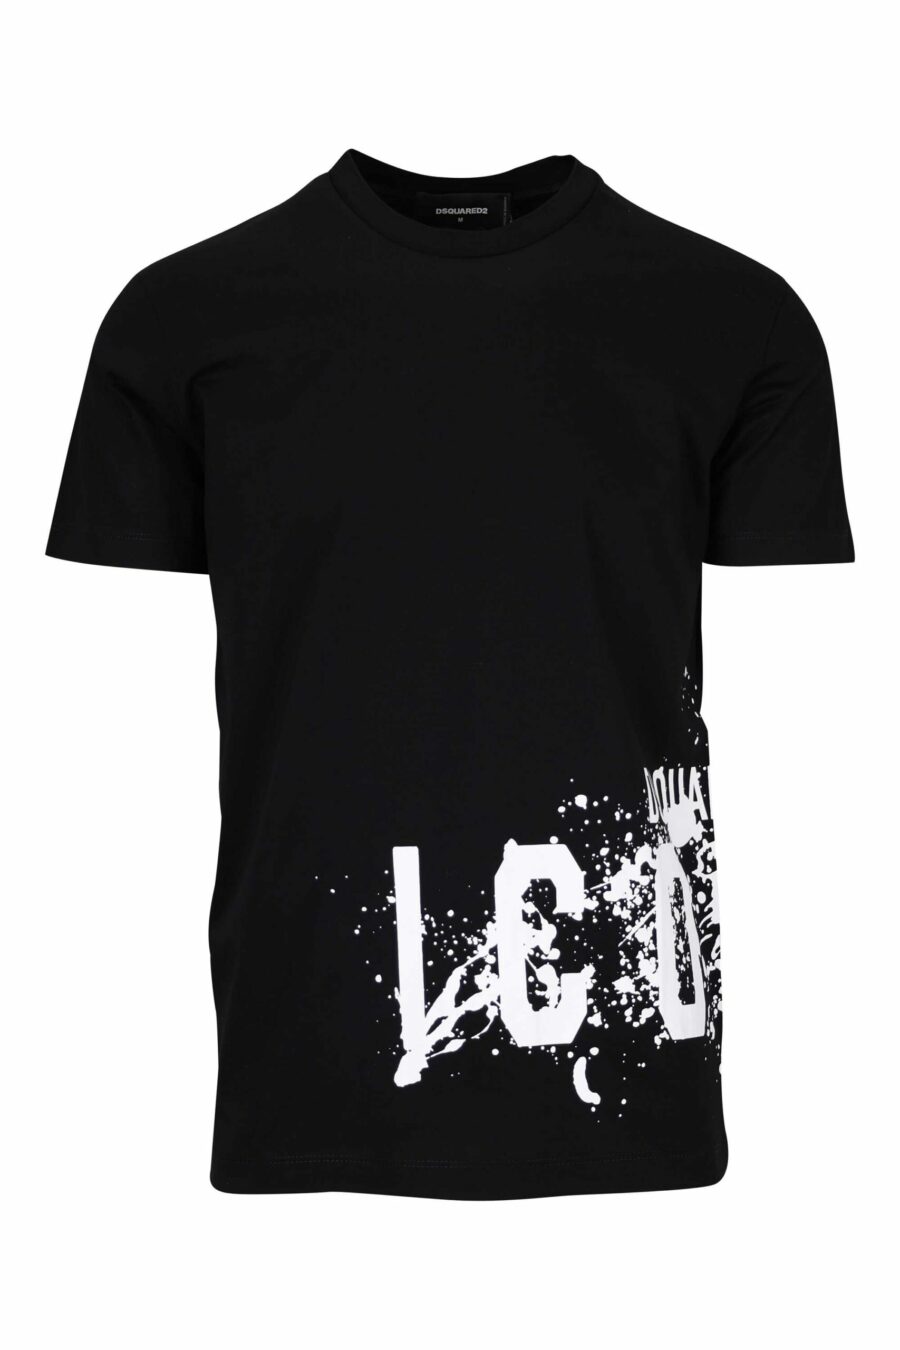 T-shirt noir avec maxilogo "icon splash" en dessous - 8054148293758 scaled